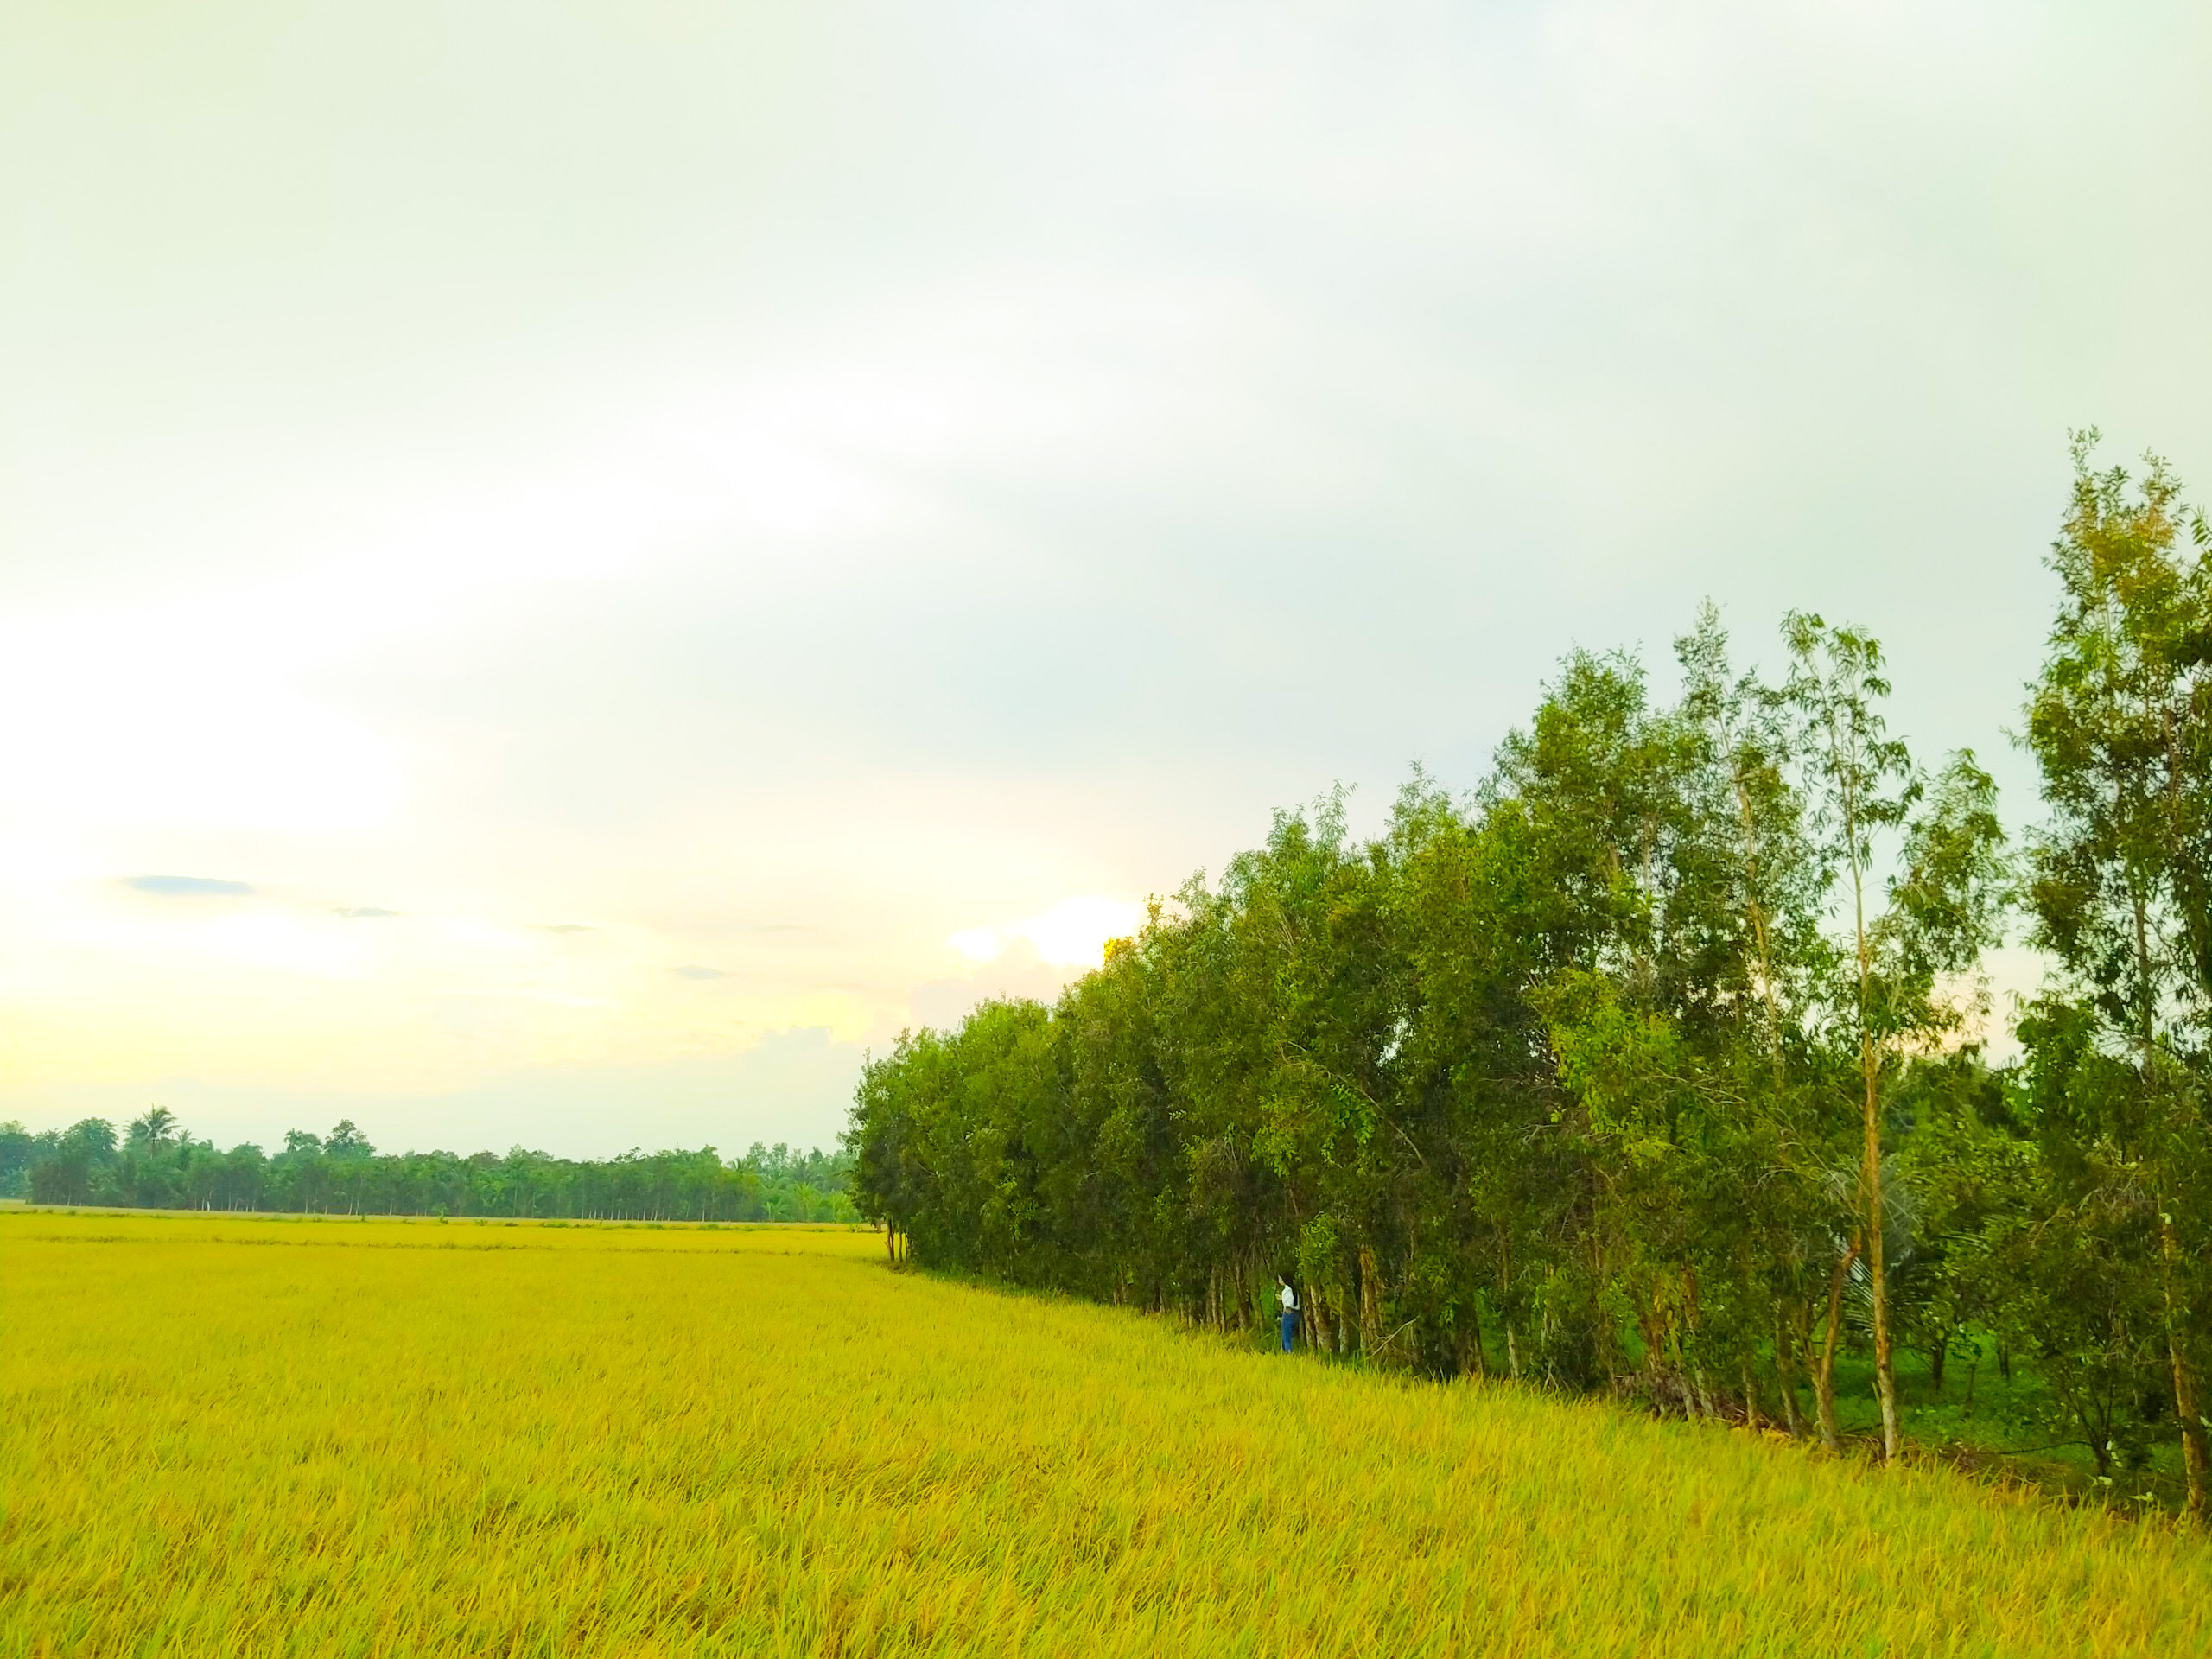 Bức ảnh hoàng hôn trên cánh đồng xanh rực này sẽ khiến bạn hấp dẫn ngay từ cái nhìn đầu tiên. Cùng ngắm nhìn màn trời đang dần chuyển sang màu đỏ cam cùng với khung cảnh thiên nhiên tuyệt đẹp, sẽ làm cho bạn thấy thật sự bình thản và đắm mình vào trải nghiệm này.